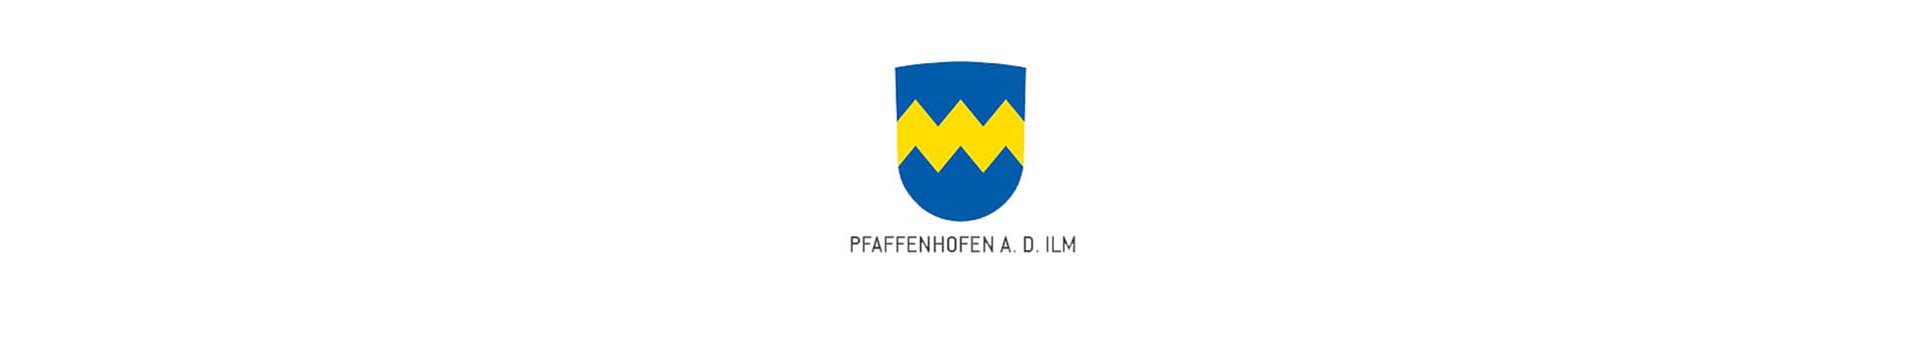 Das Bild zeigt Wappen und Schriftzug der Stadt Pfaffenhofen